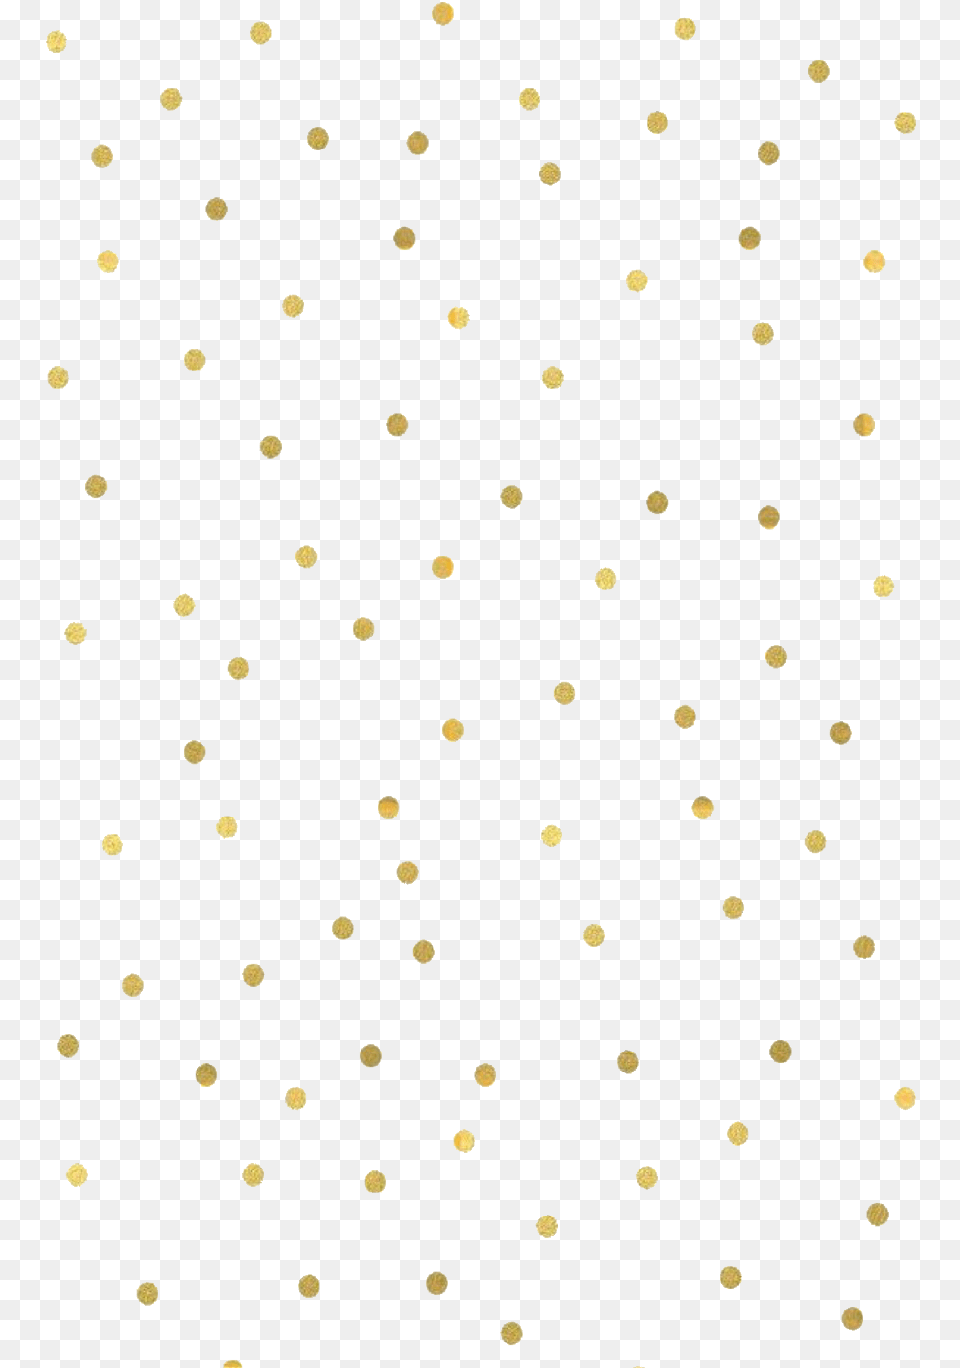 Polka Dot Polka Dot, Pattern, Polka Dot Png Image